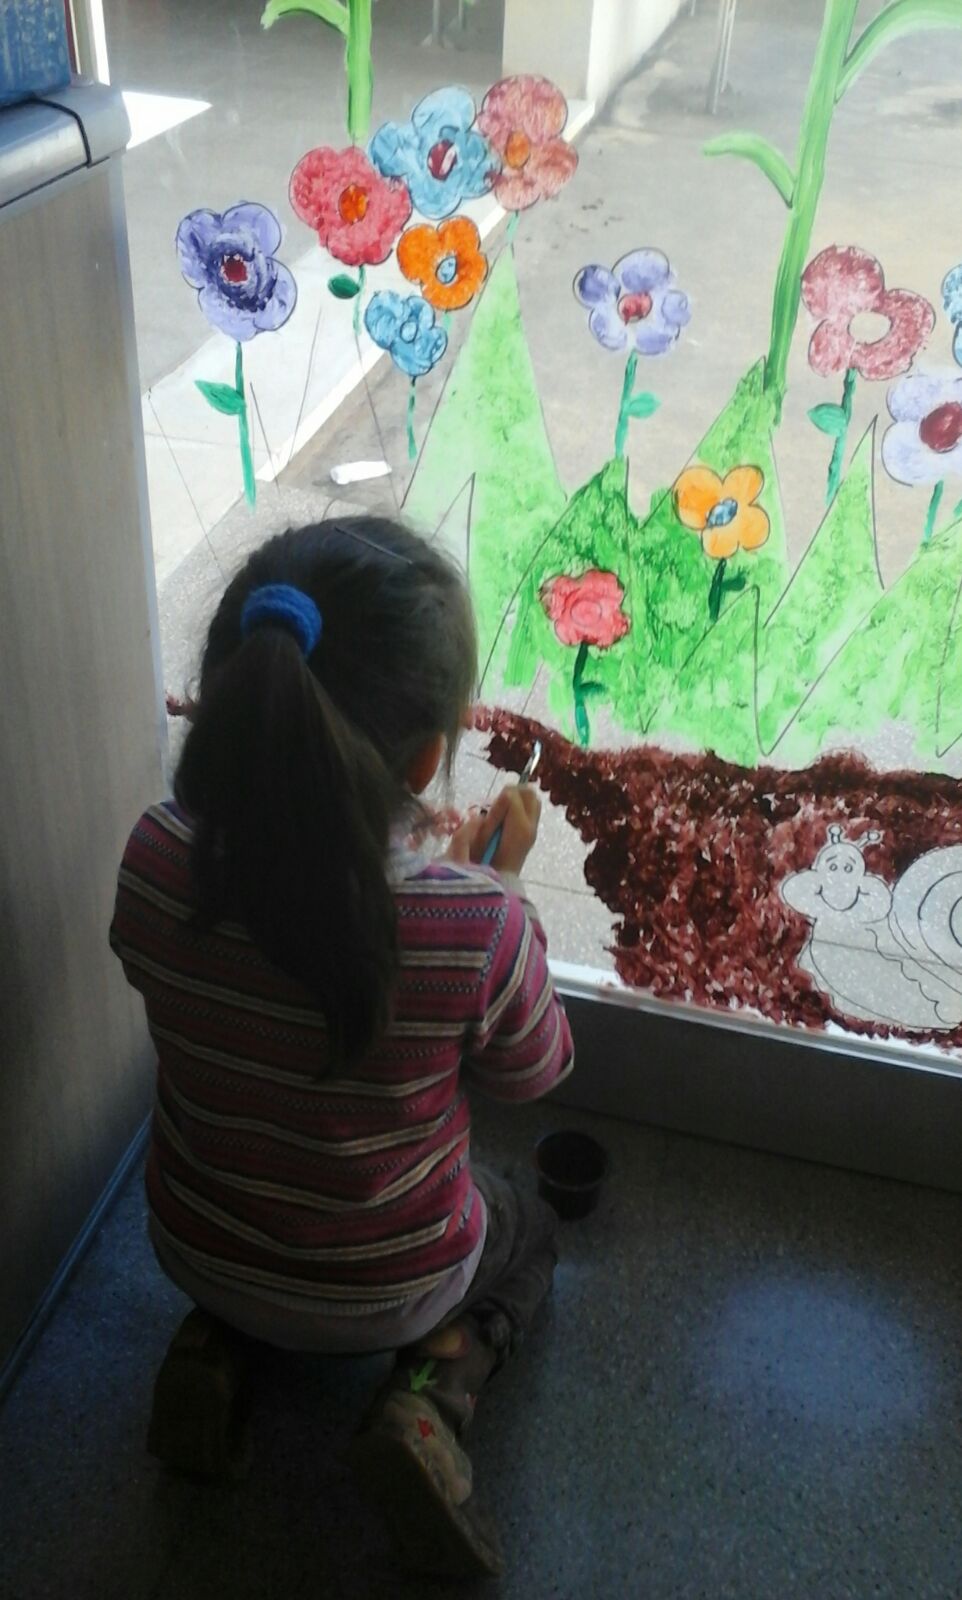 Els nens i nenes de P-3 i P-4 esperen la primavera amb il·lusió i un somriure a la cara perquè pintar els vidres els agrada.